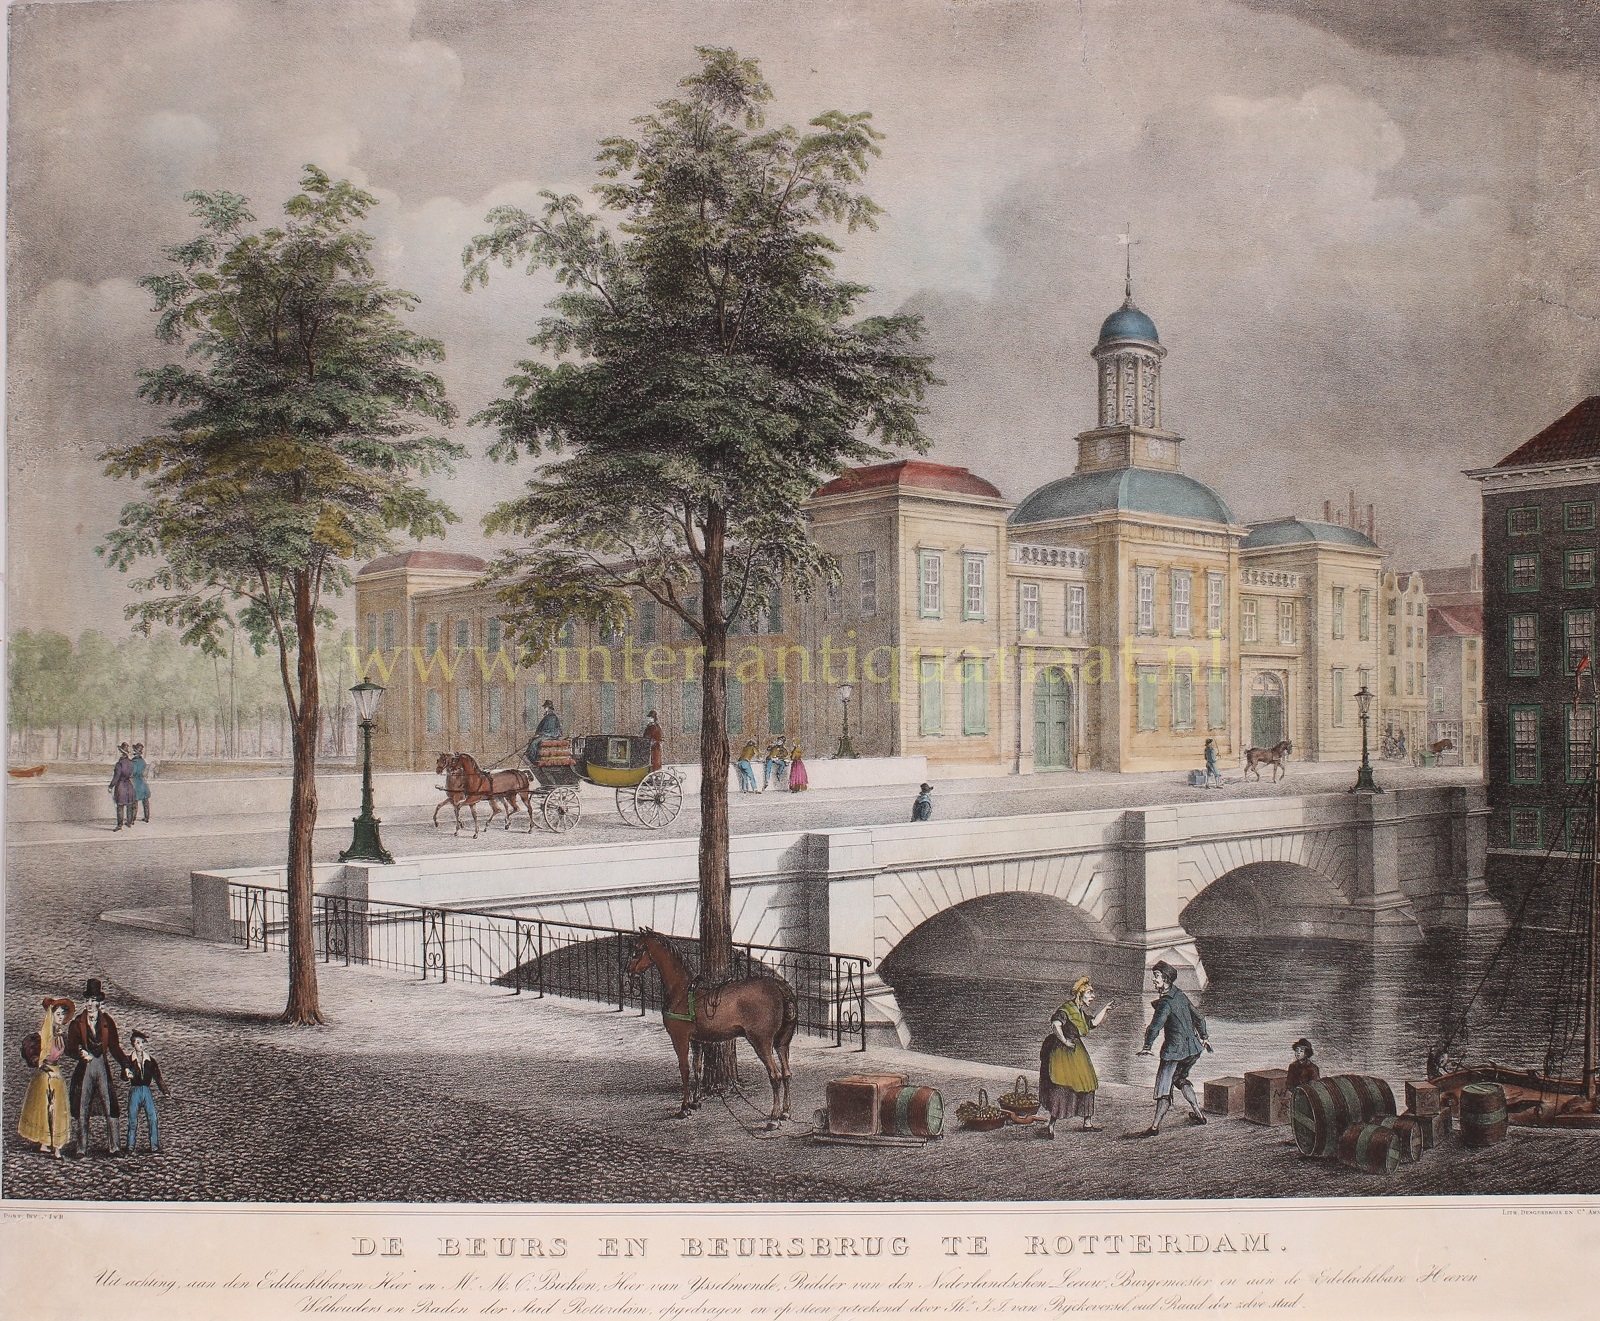  - Old exchange of Rotterdam - Jacob Josephus van Rijckevorsel, c. 1840